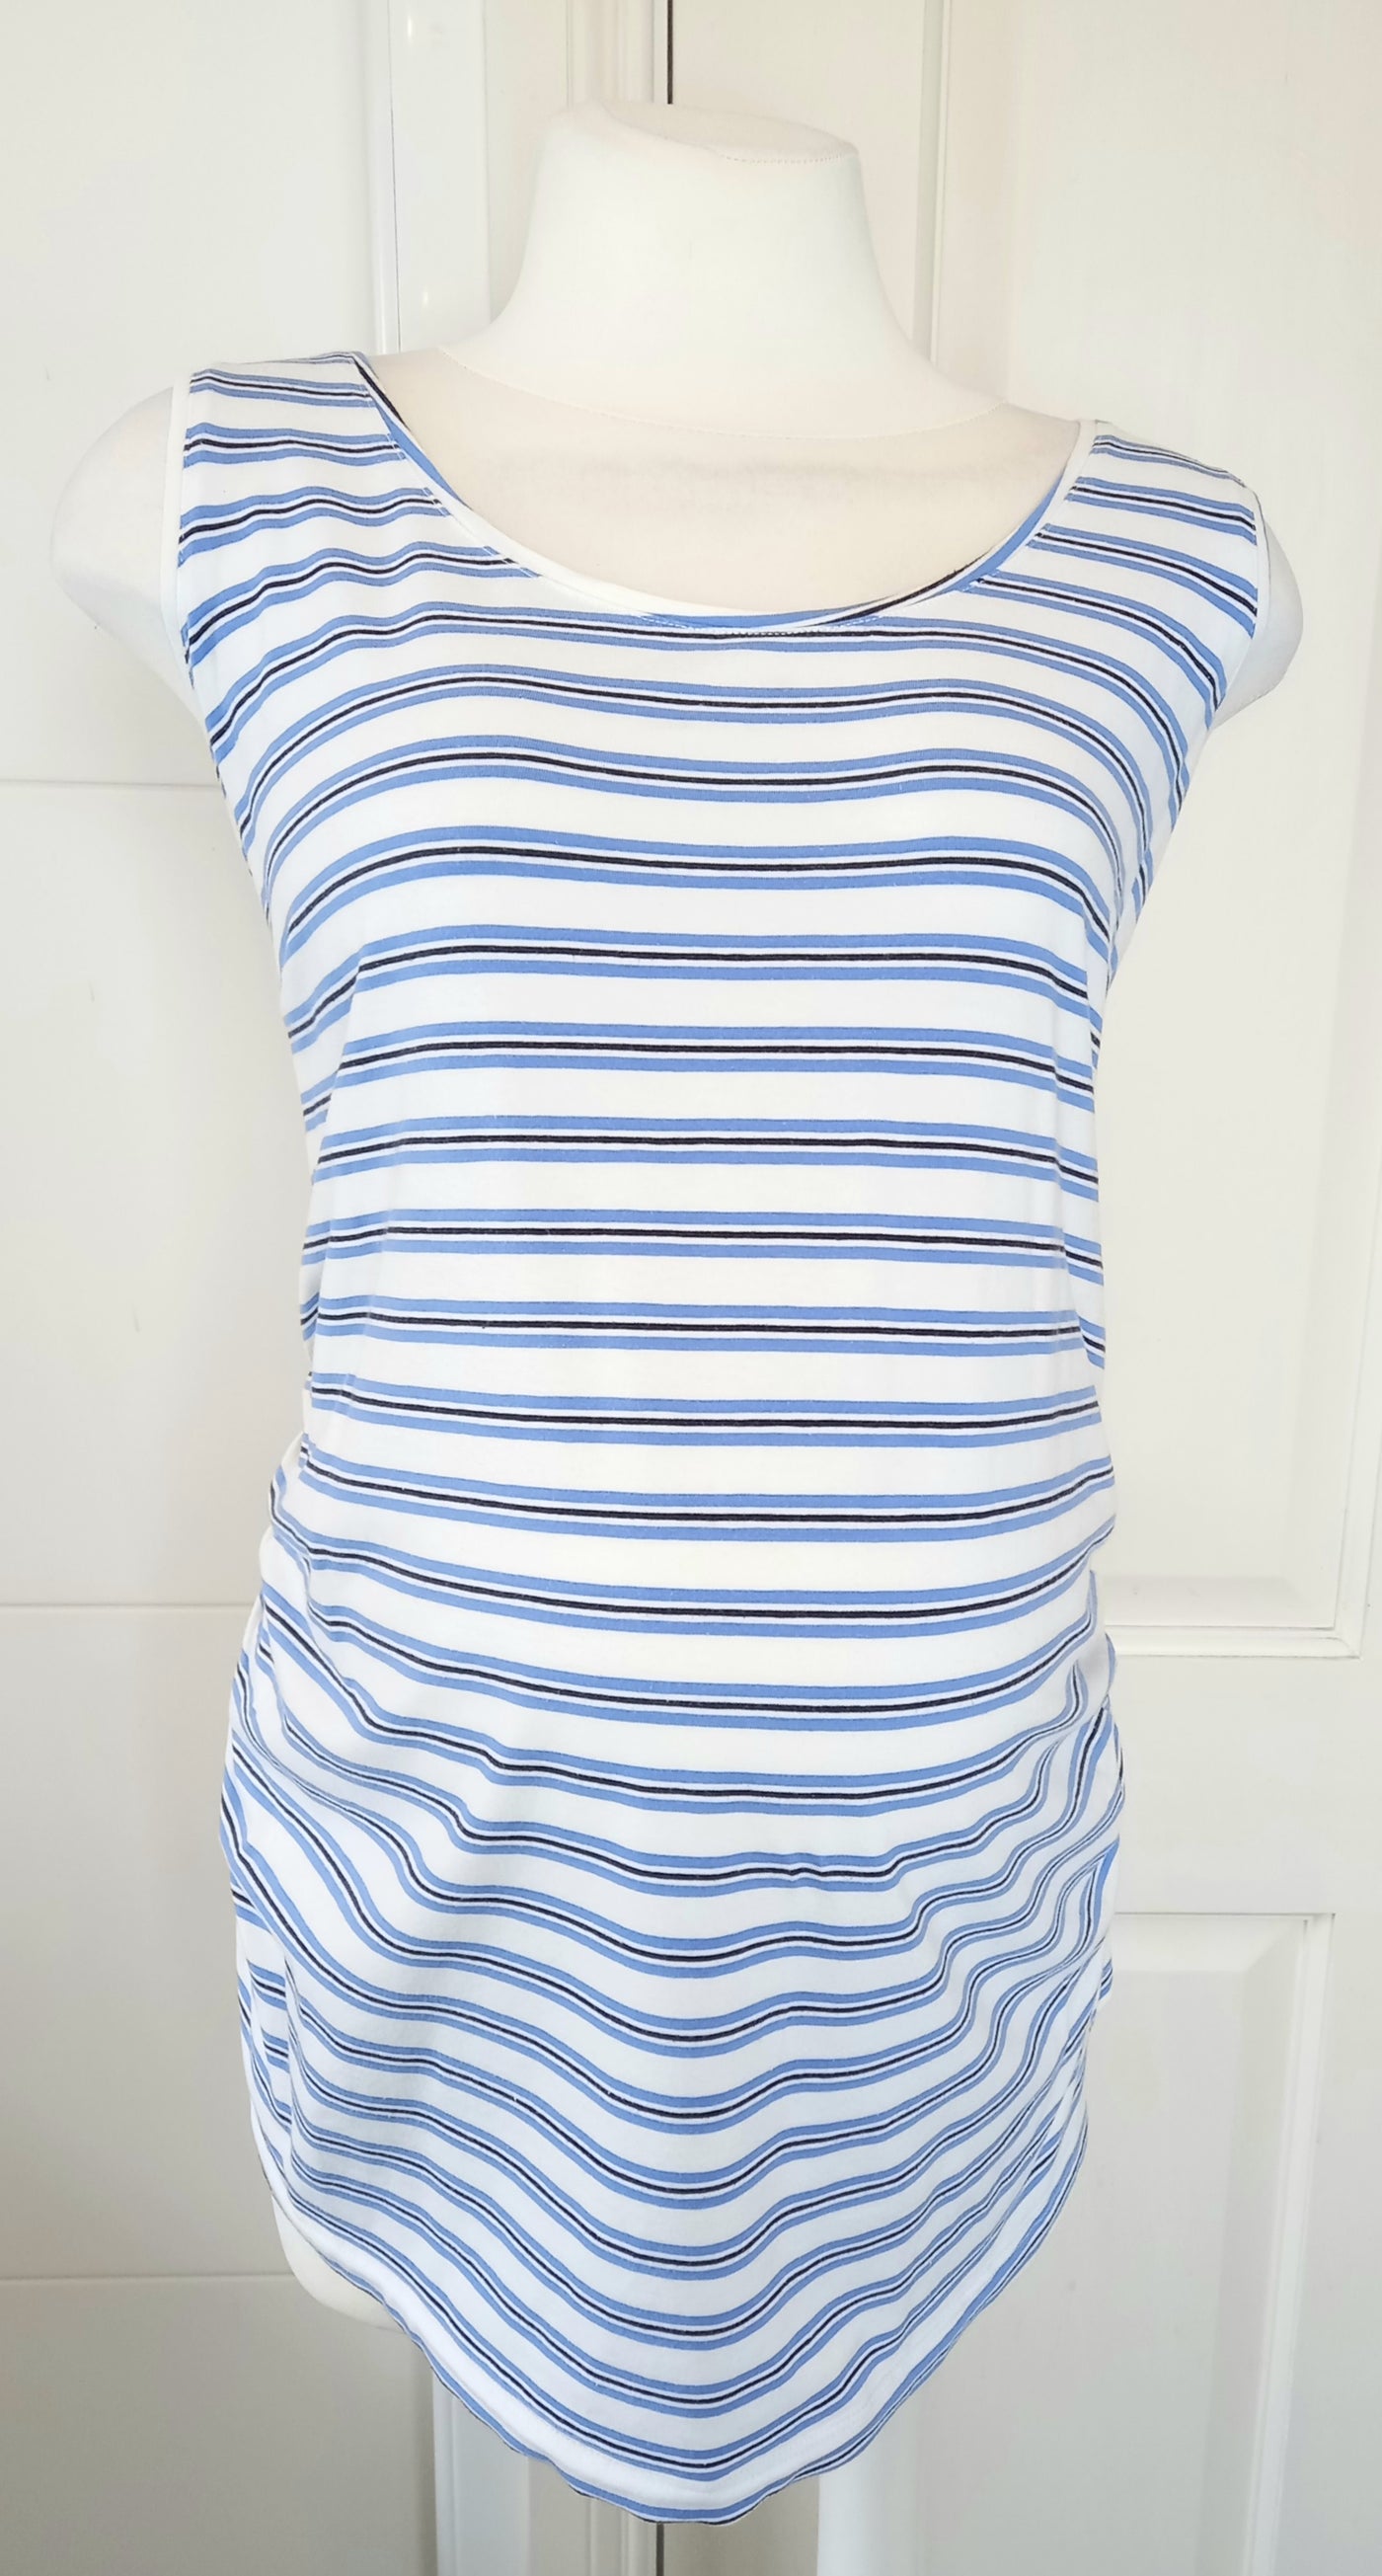 Esmara Blue & White Striped Sleeveless Top - Size 20/22